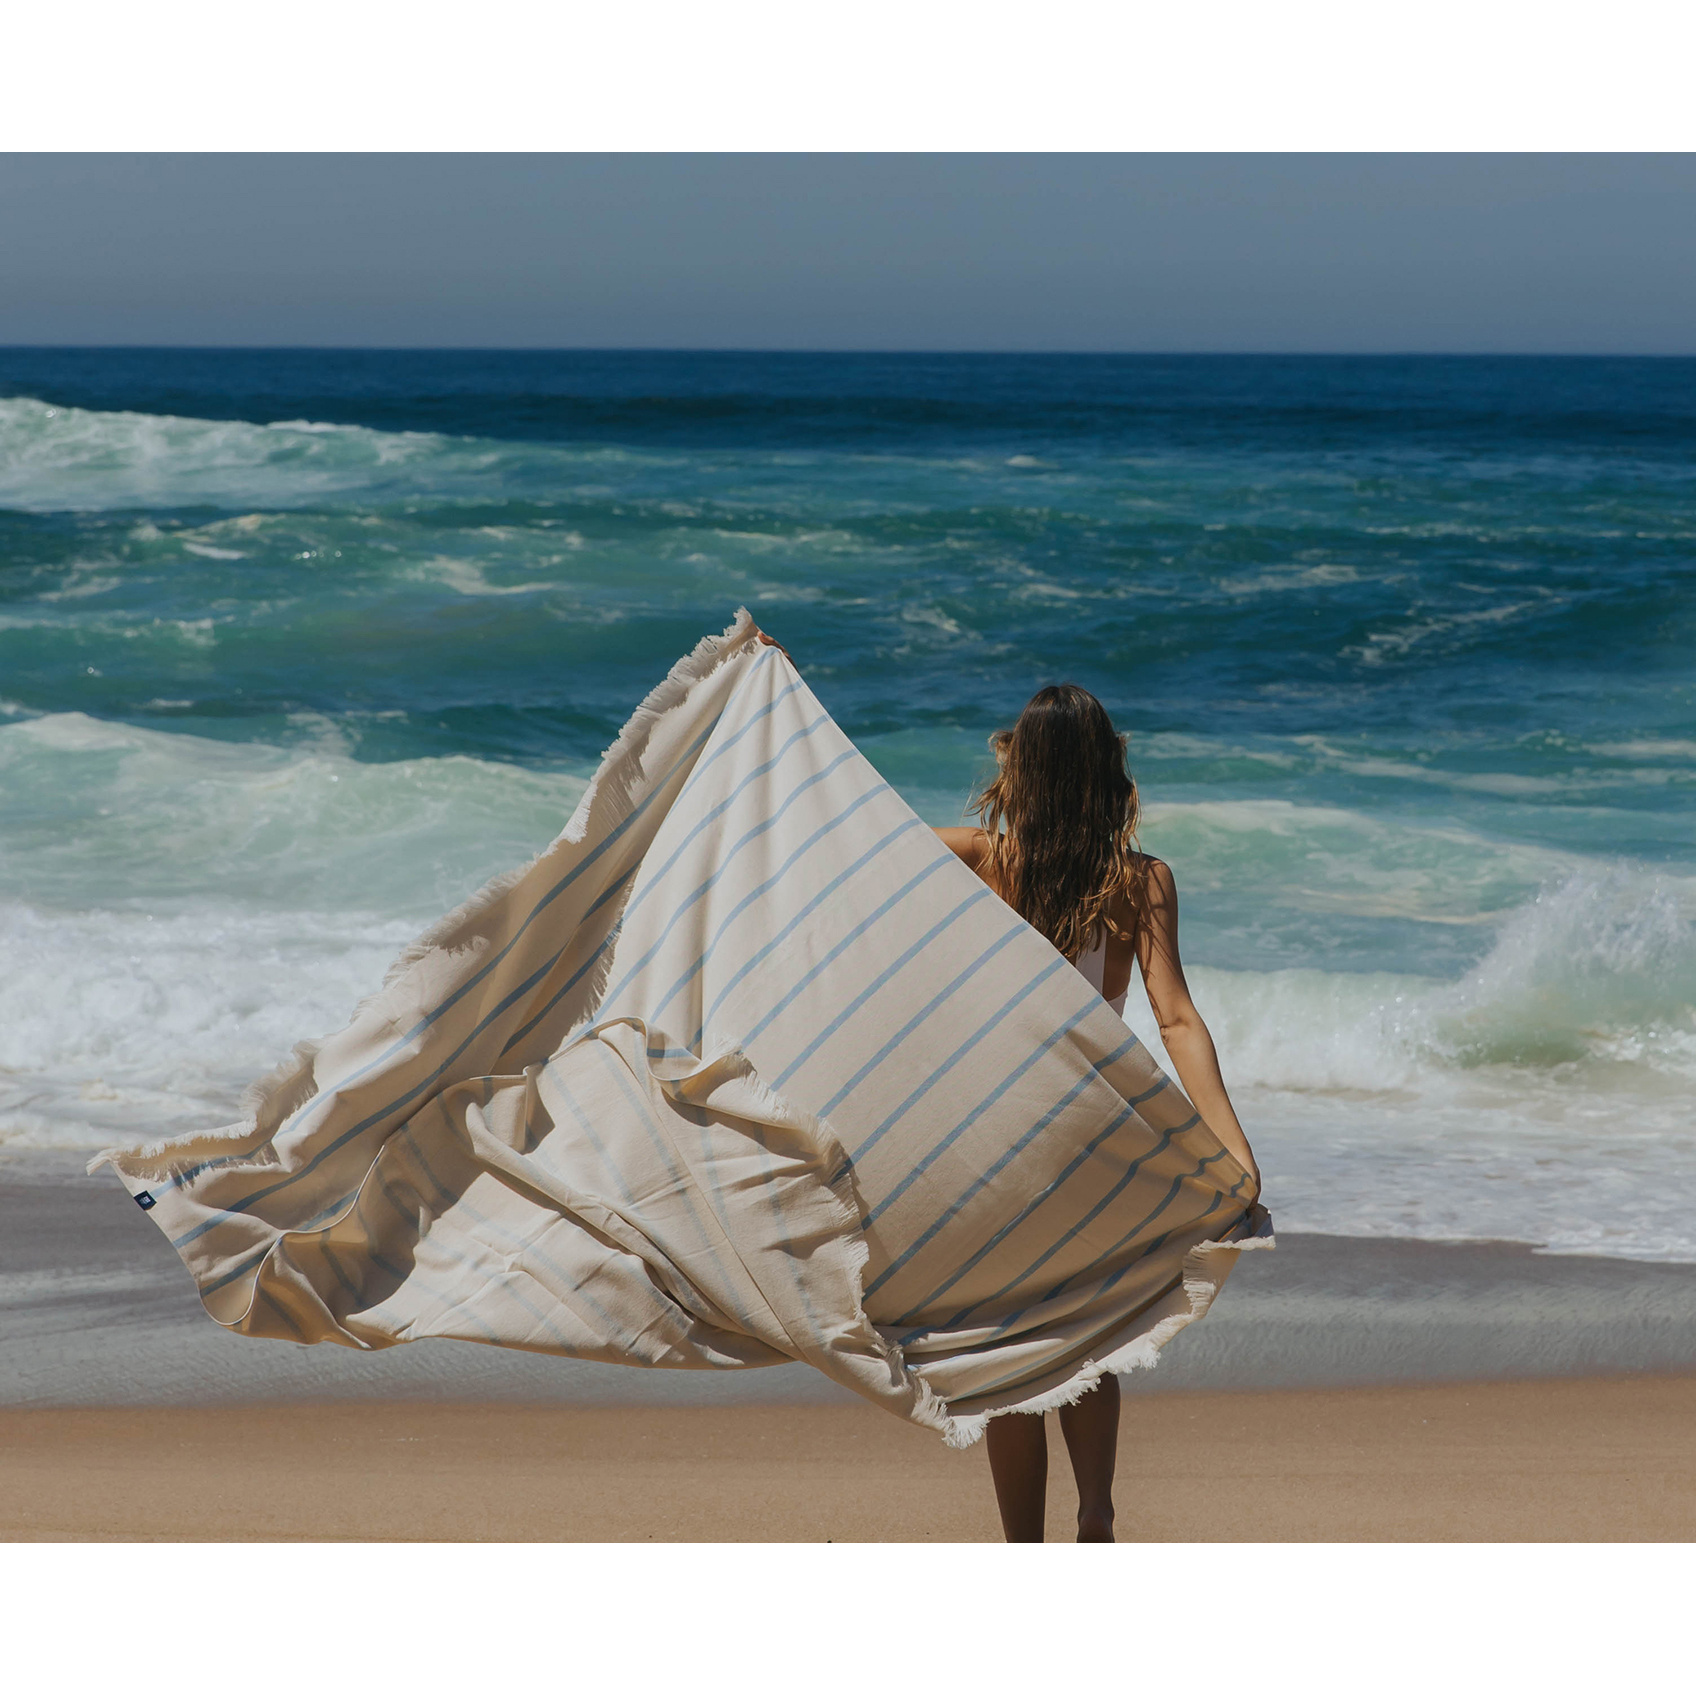 Torres Novas 1845 Beach towel Boa-Nova, Light Blue - 180 x 180 cm - 100% Cotton